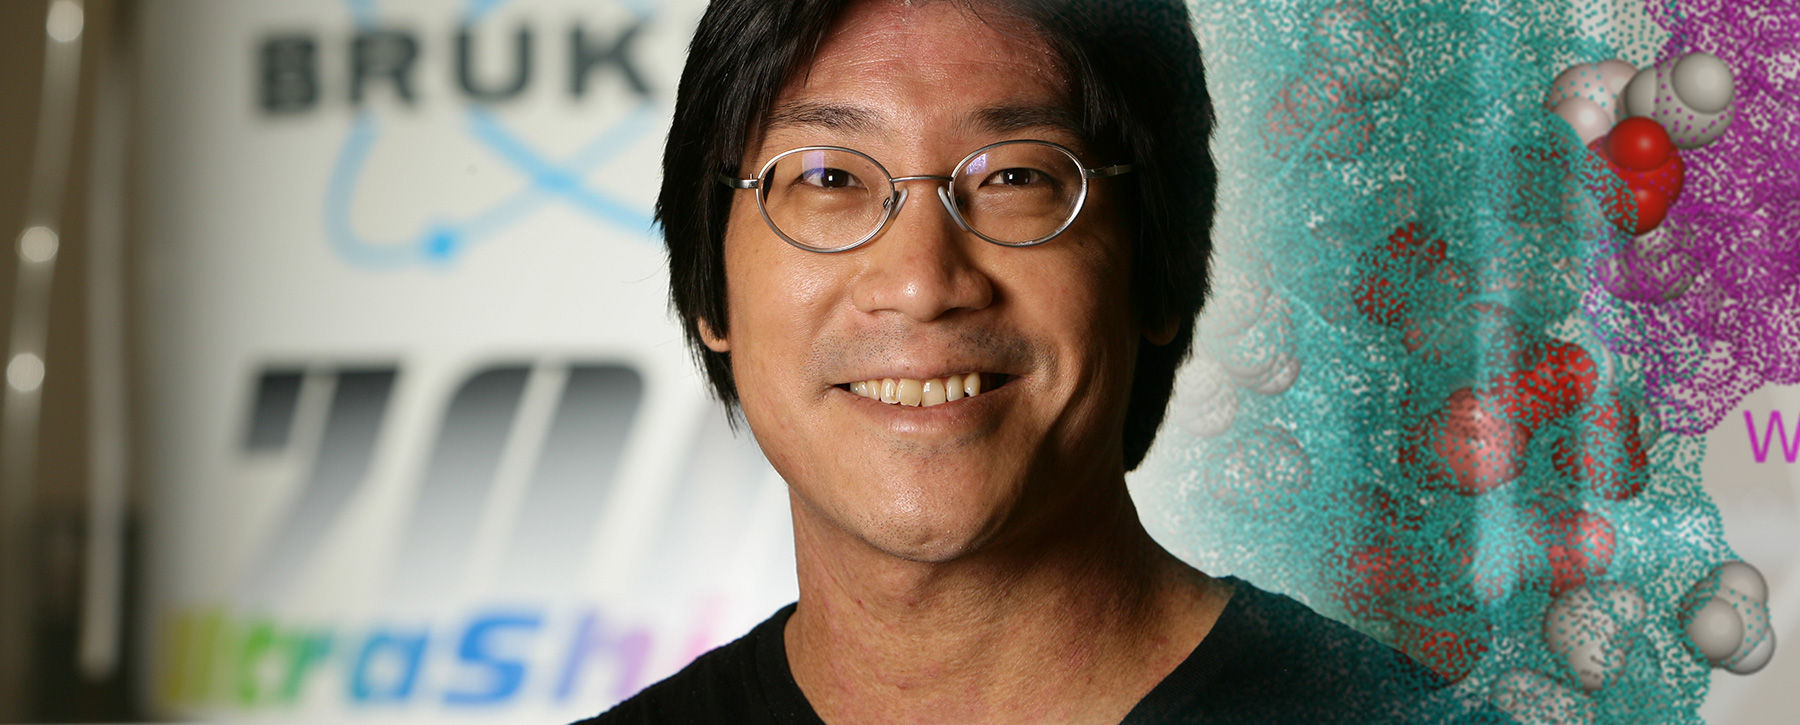 Jeffrey W. Peng